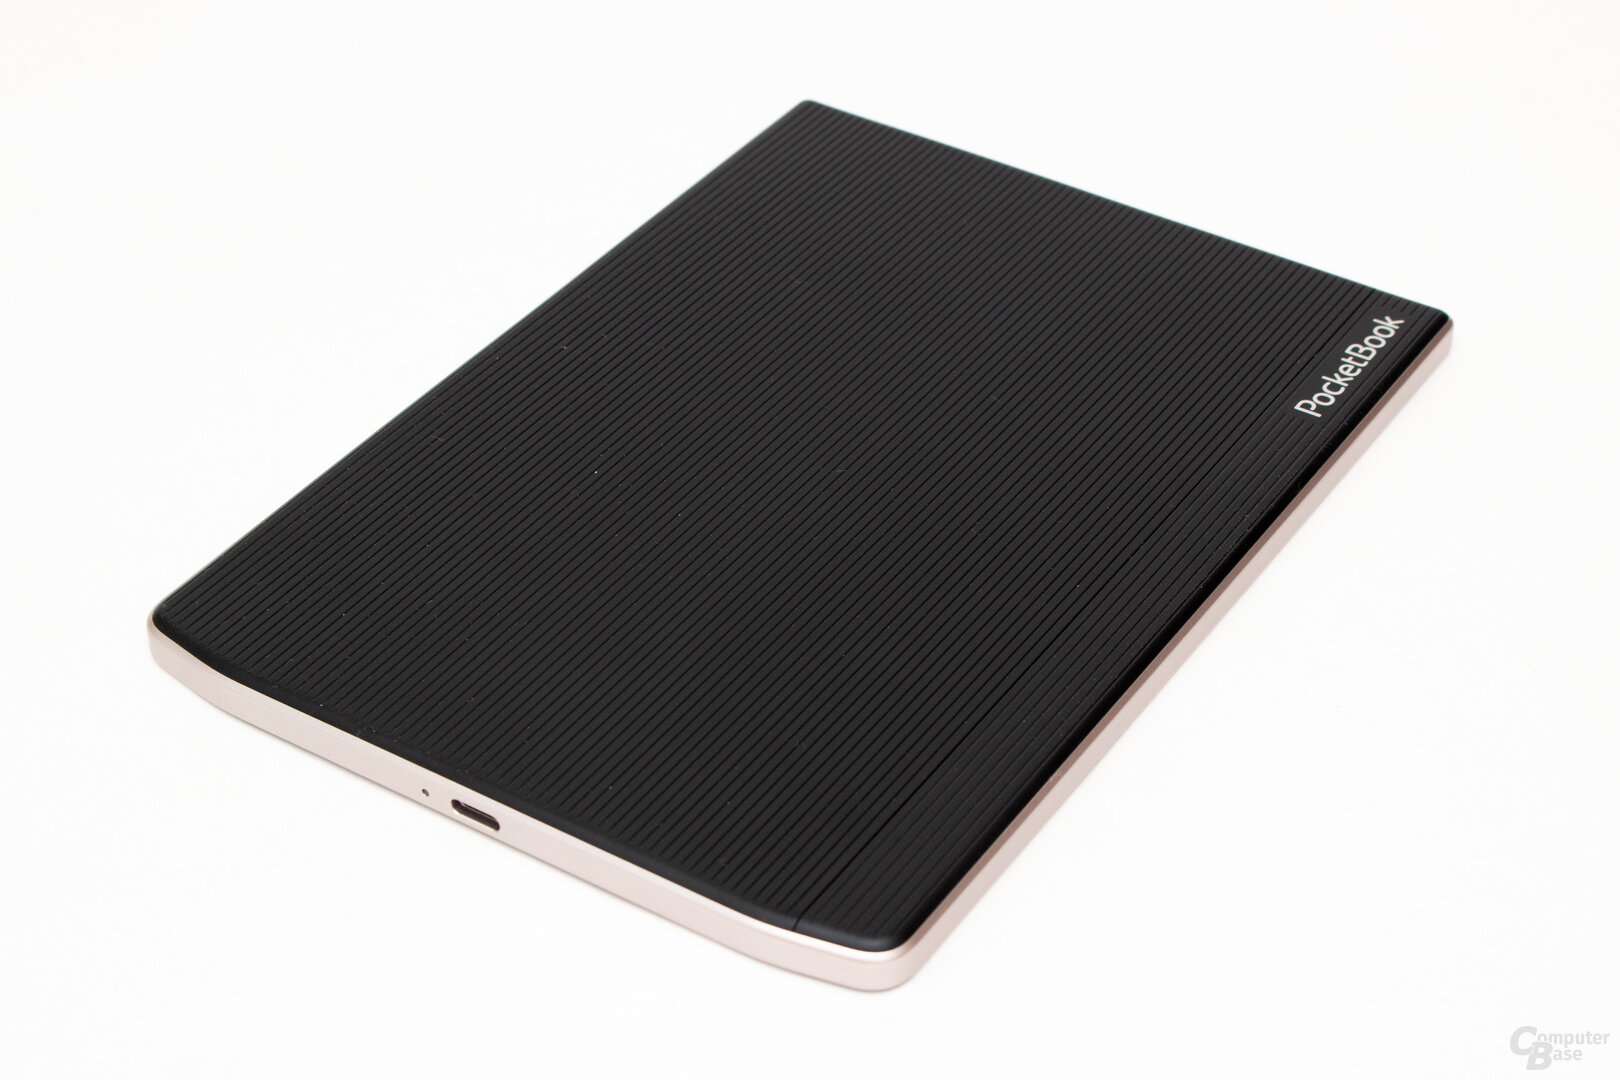 PocketBook InkPad 4 im ausführlichen Test 